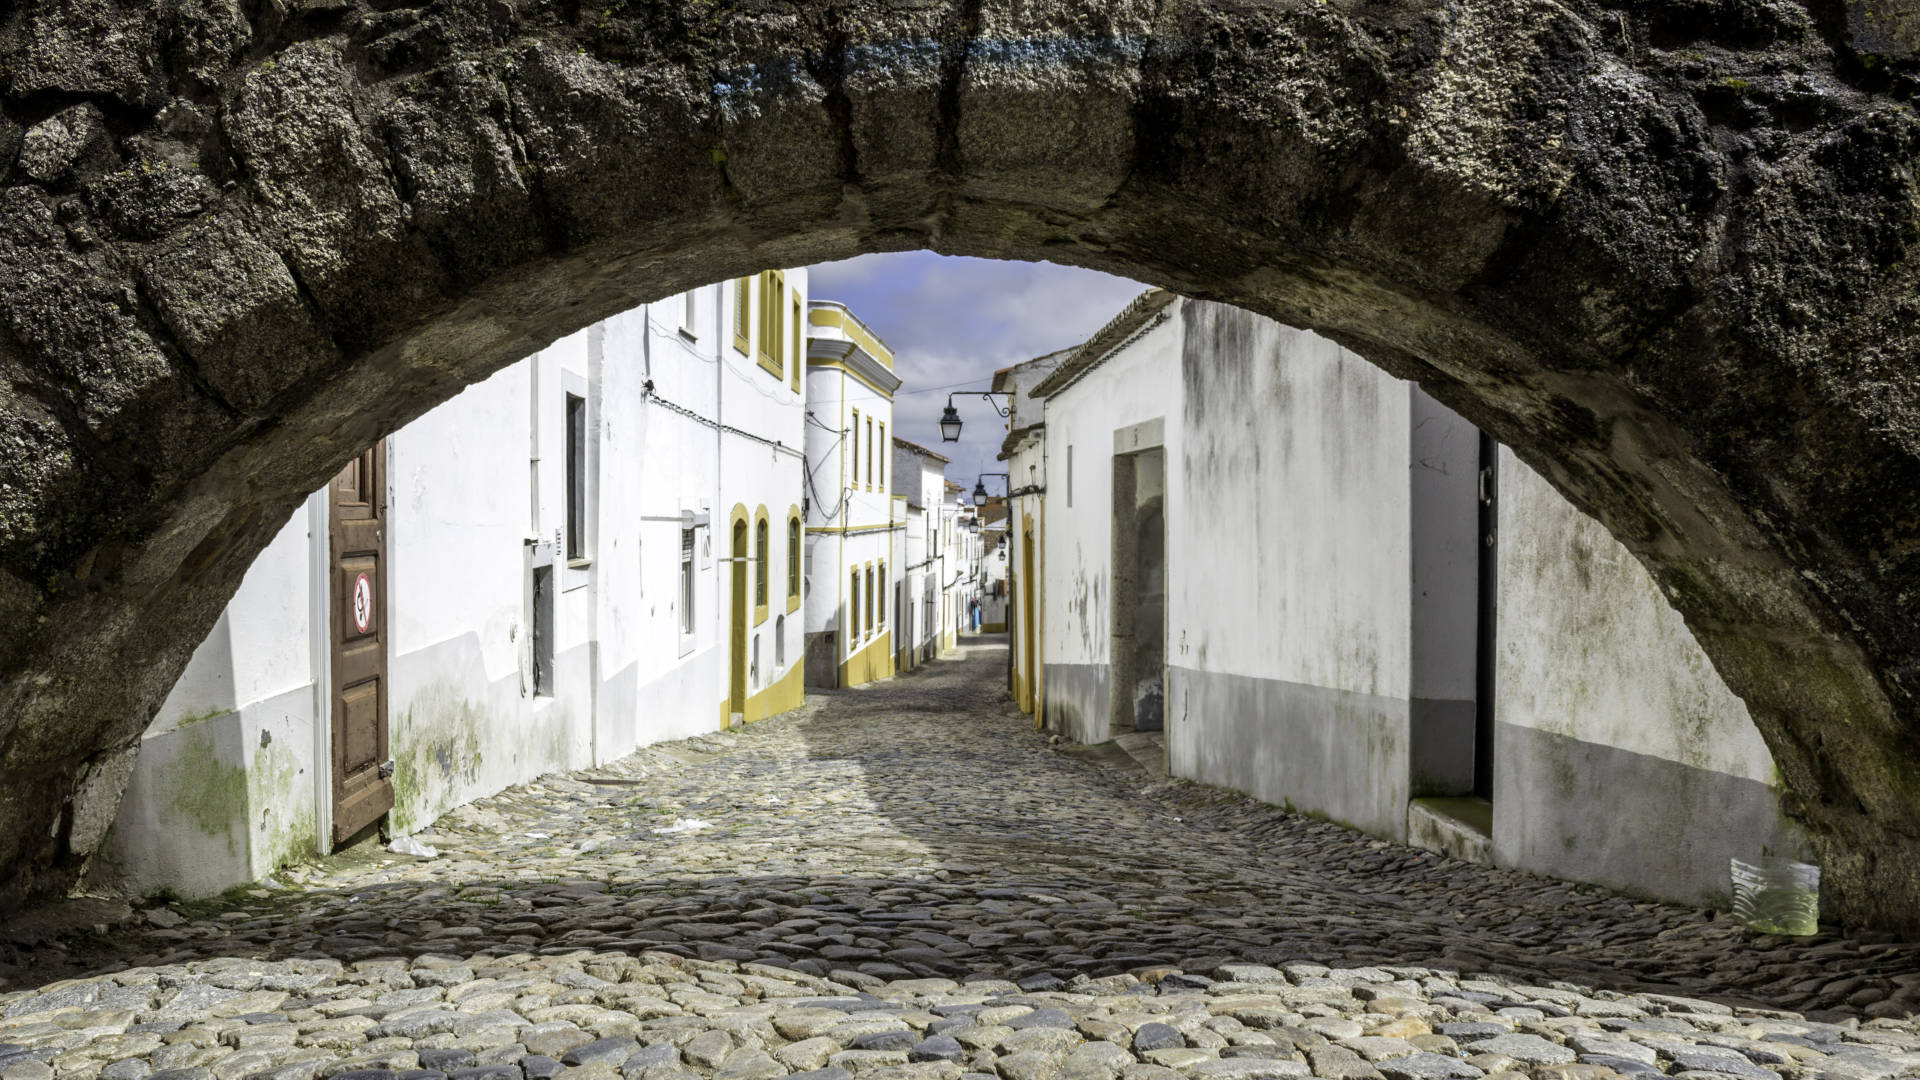 Custom Travel Planner Network-Portugal-Evora